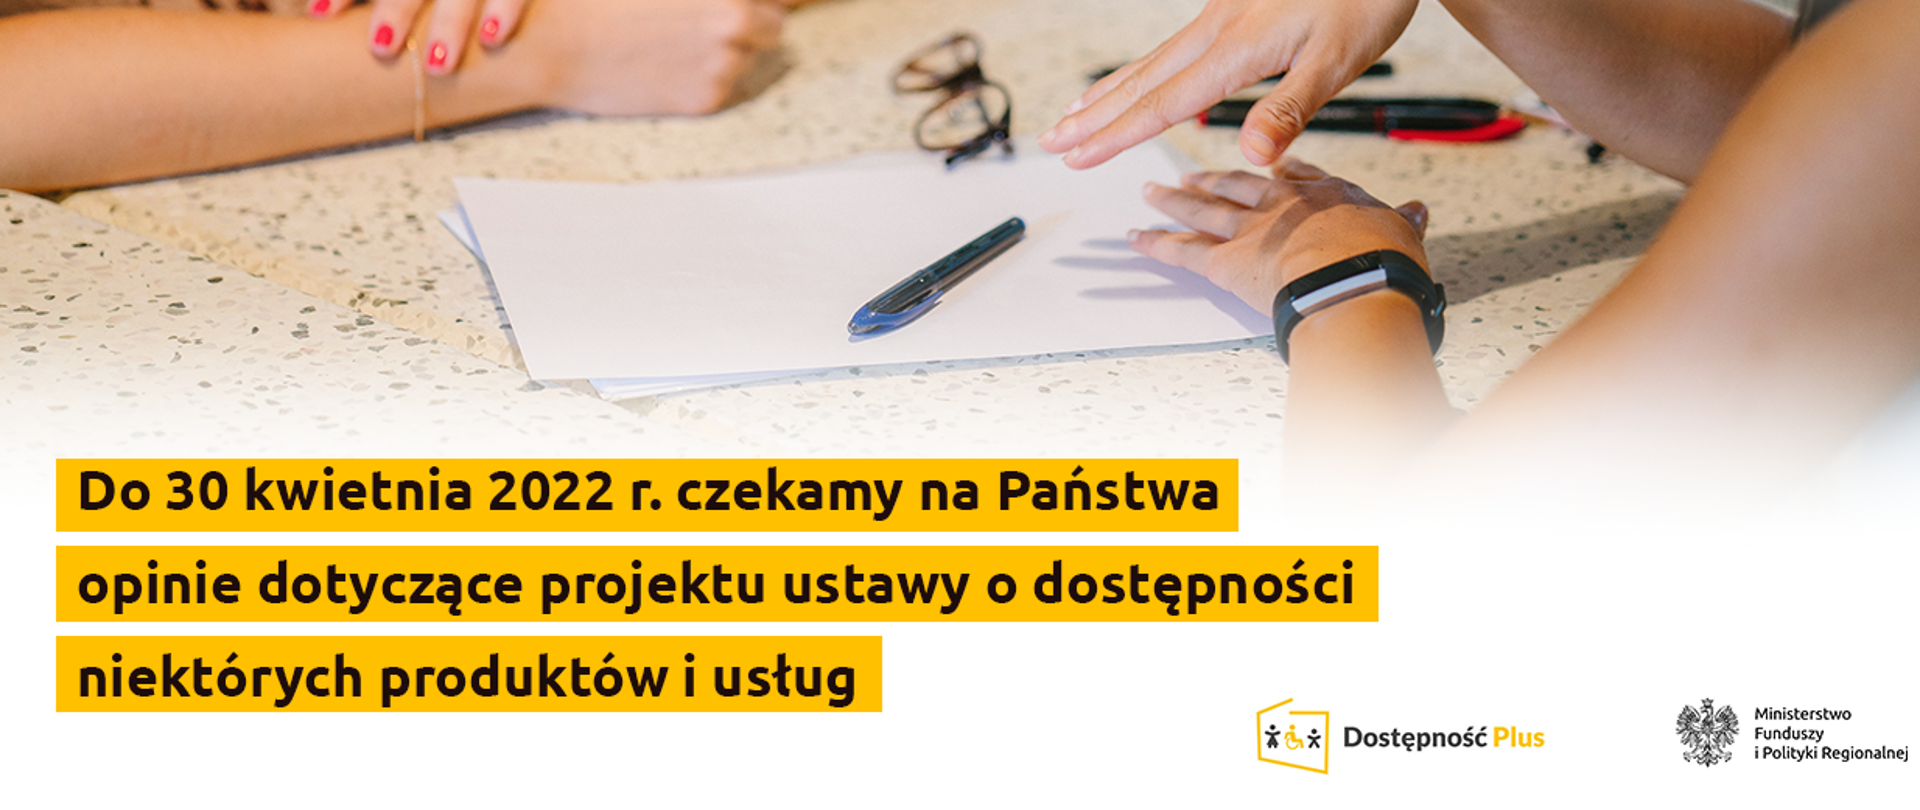 Na tle ilustracji rąk i dokumentów, napis: "Do 30 kwietnia 2022 r. czekamy na Państwa opinie dotyczące projektu ustawy o dostępności niektórych produktów i usług"